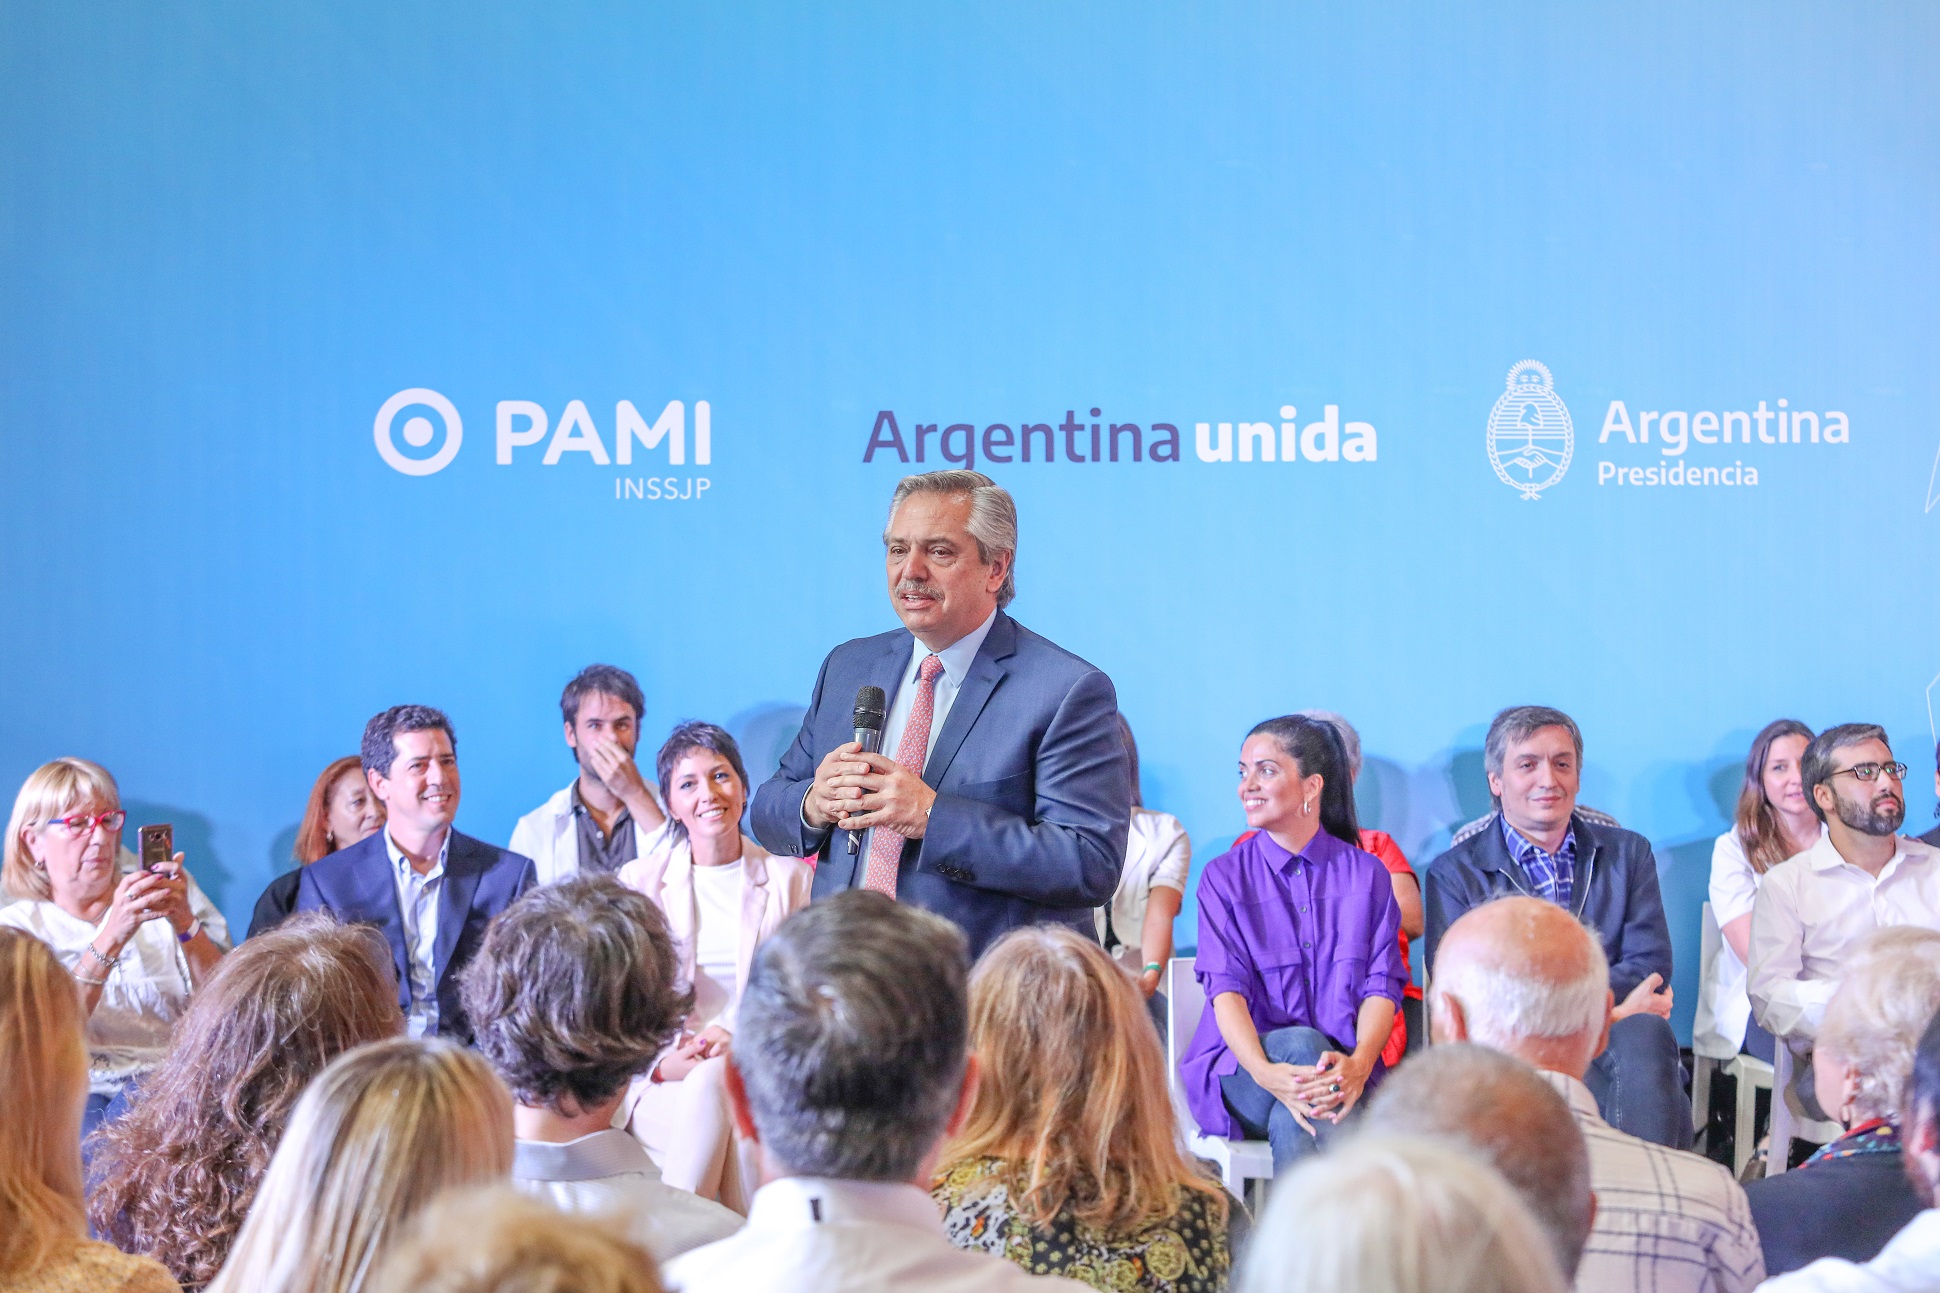 El presidente Alberto Fernández presentó el listado de medicamentos gratuitos para jubilados